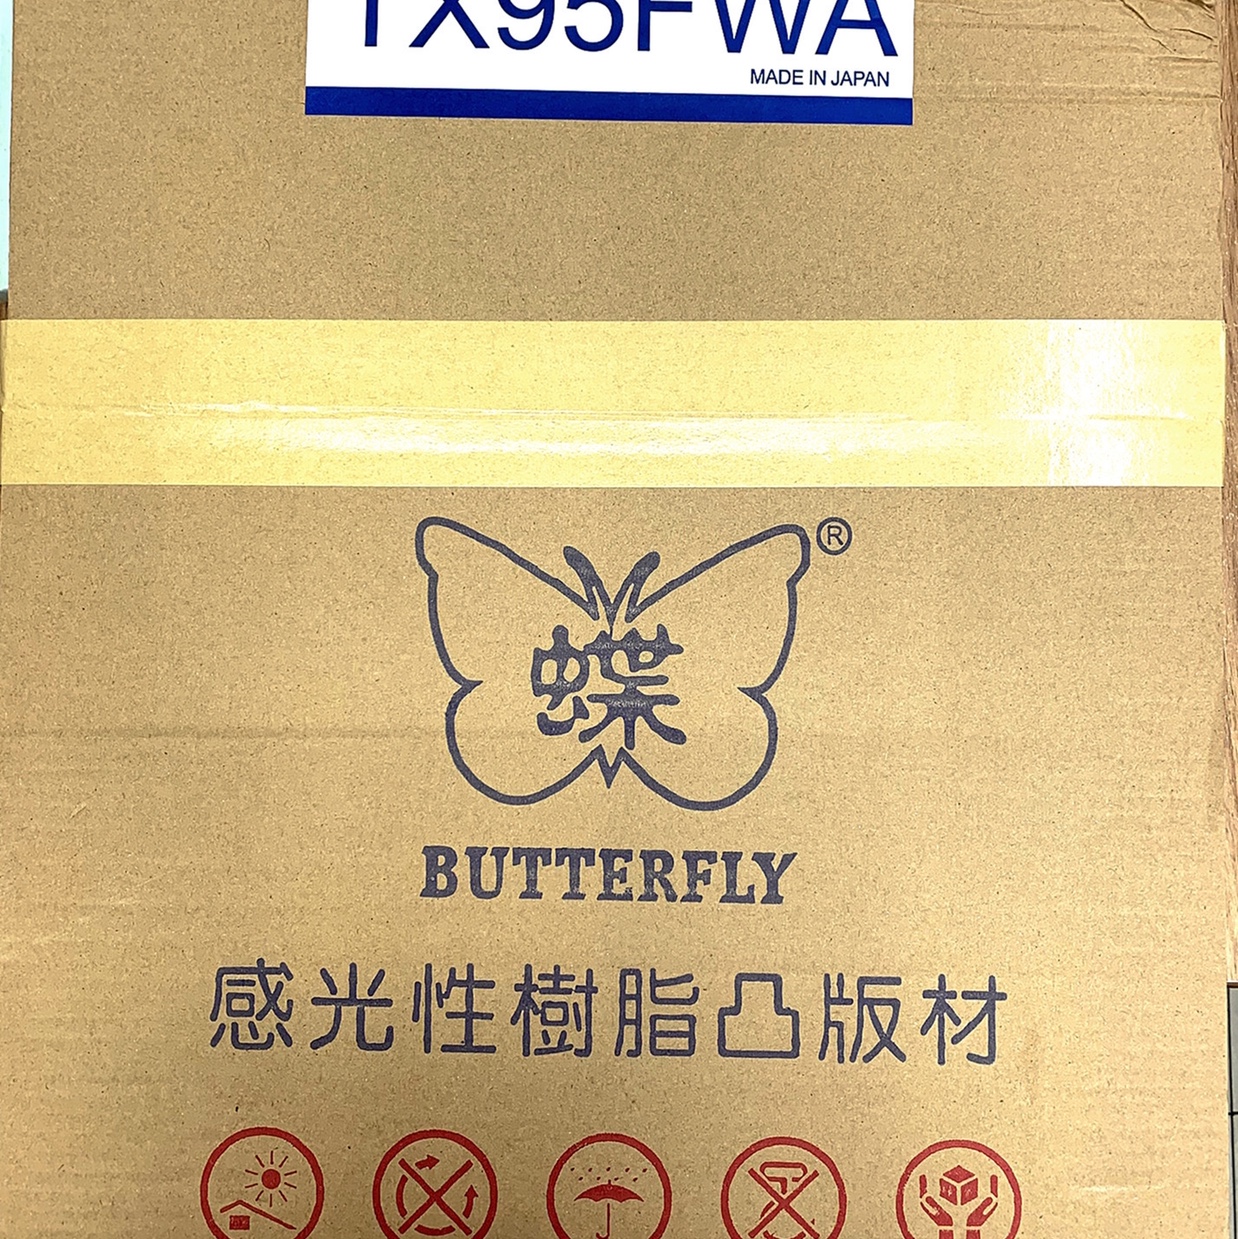 印刷专业配件 蝴蝶牌 TX95FWA水洗感光树脂版版材  树脂版